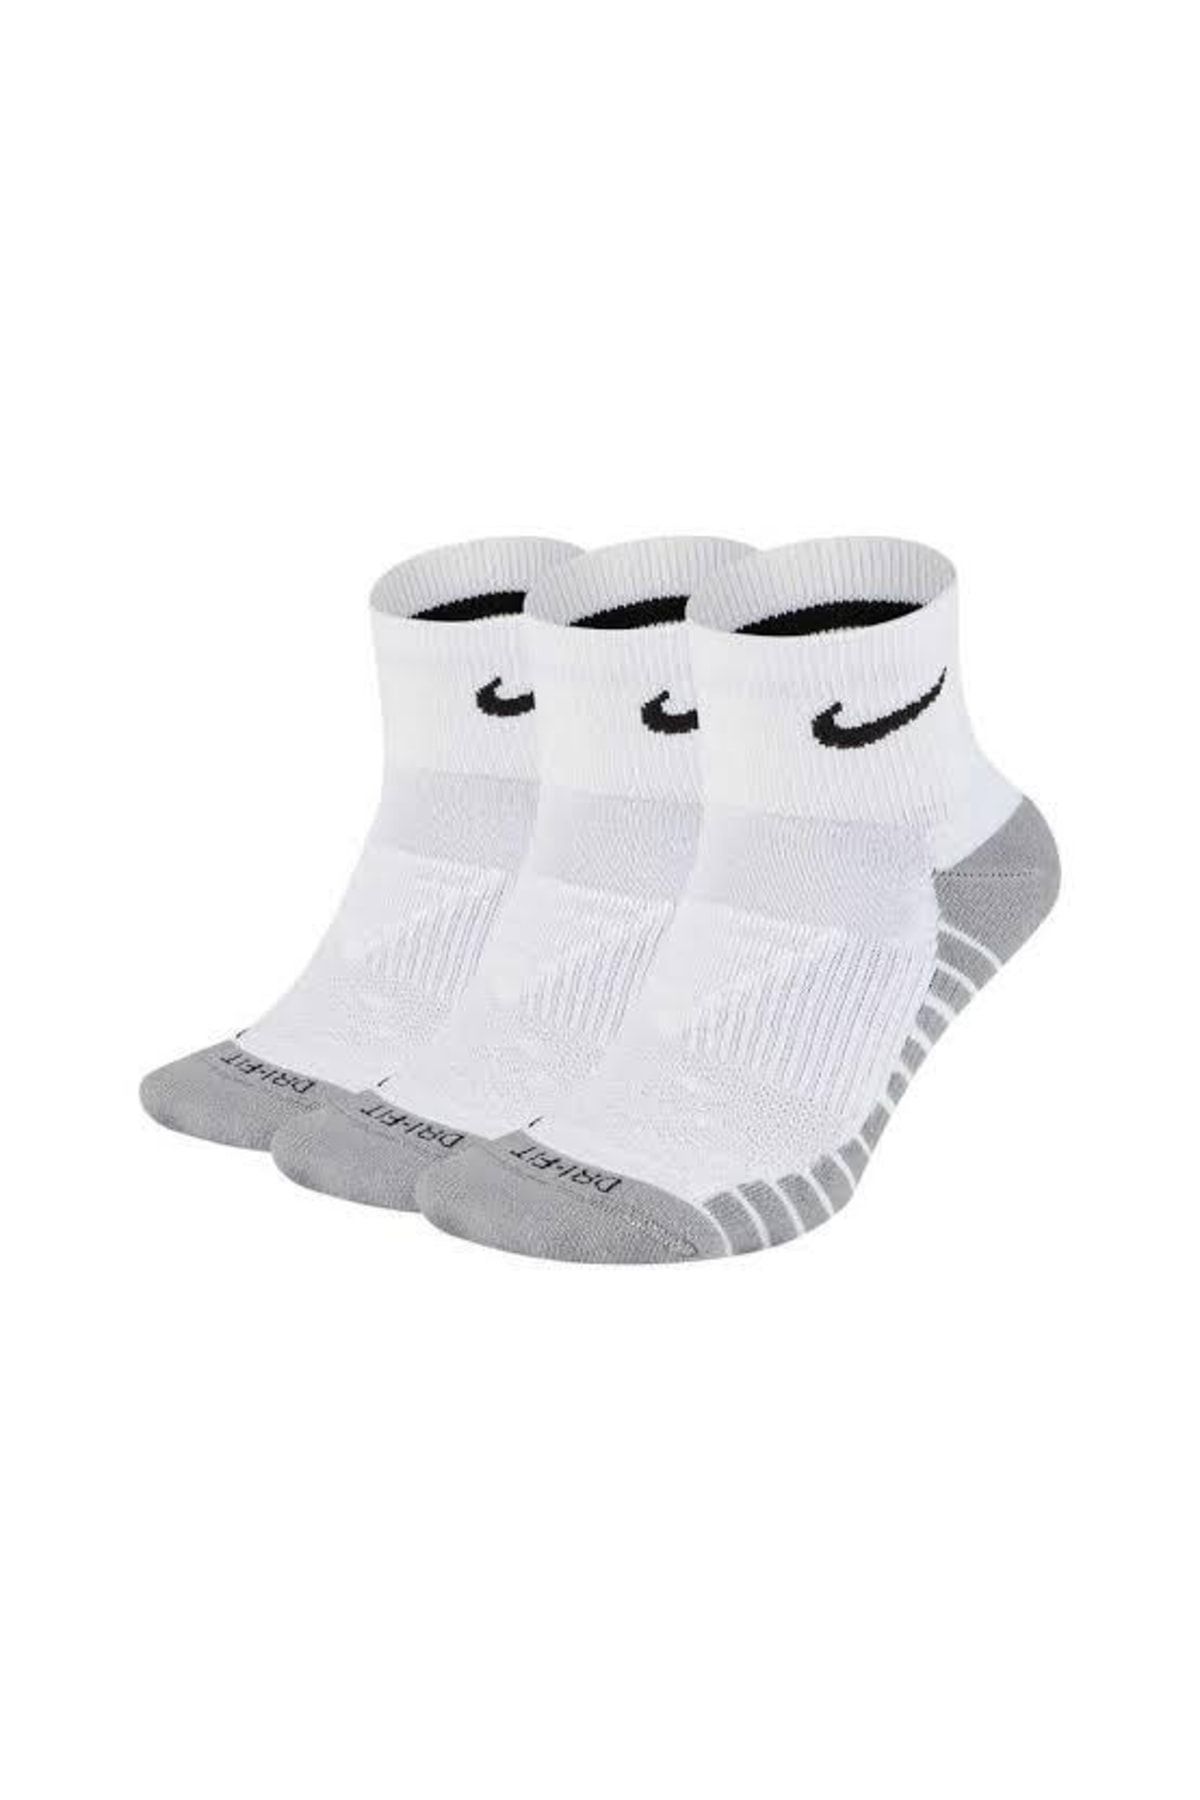 Nike Everday Plus Beyaz 3'lü Erkek Çorap Sx5549-100